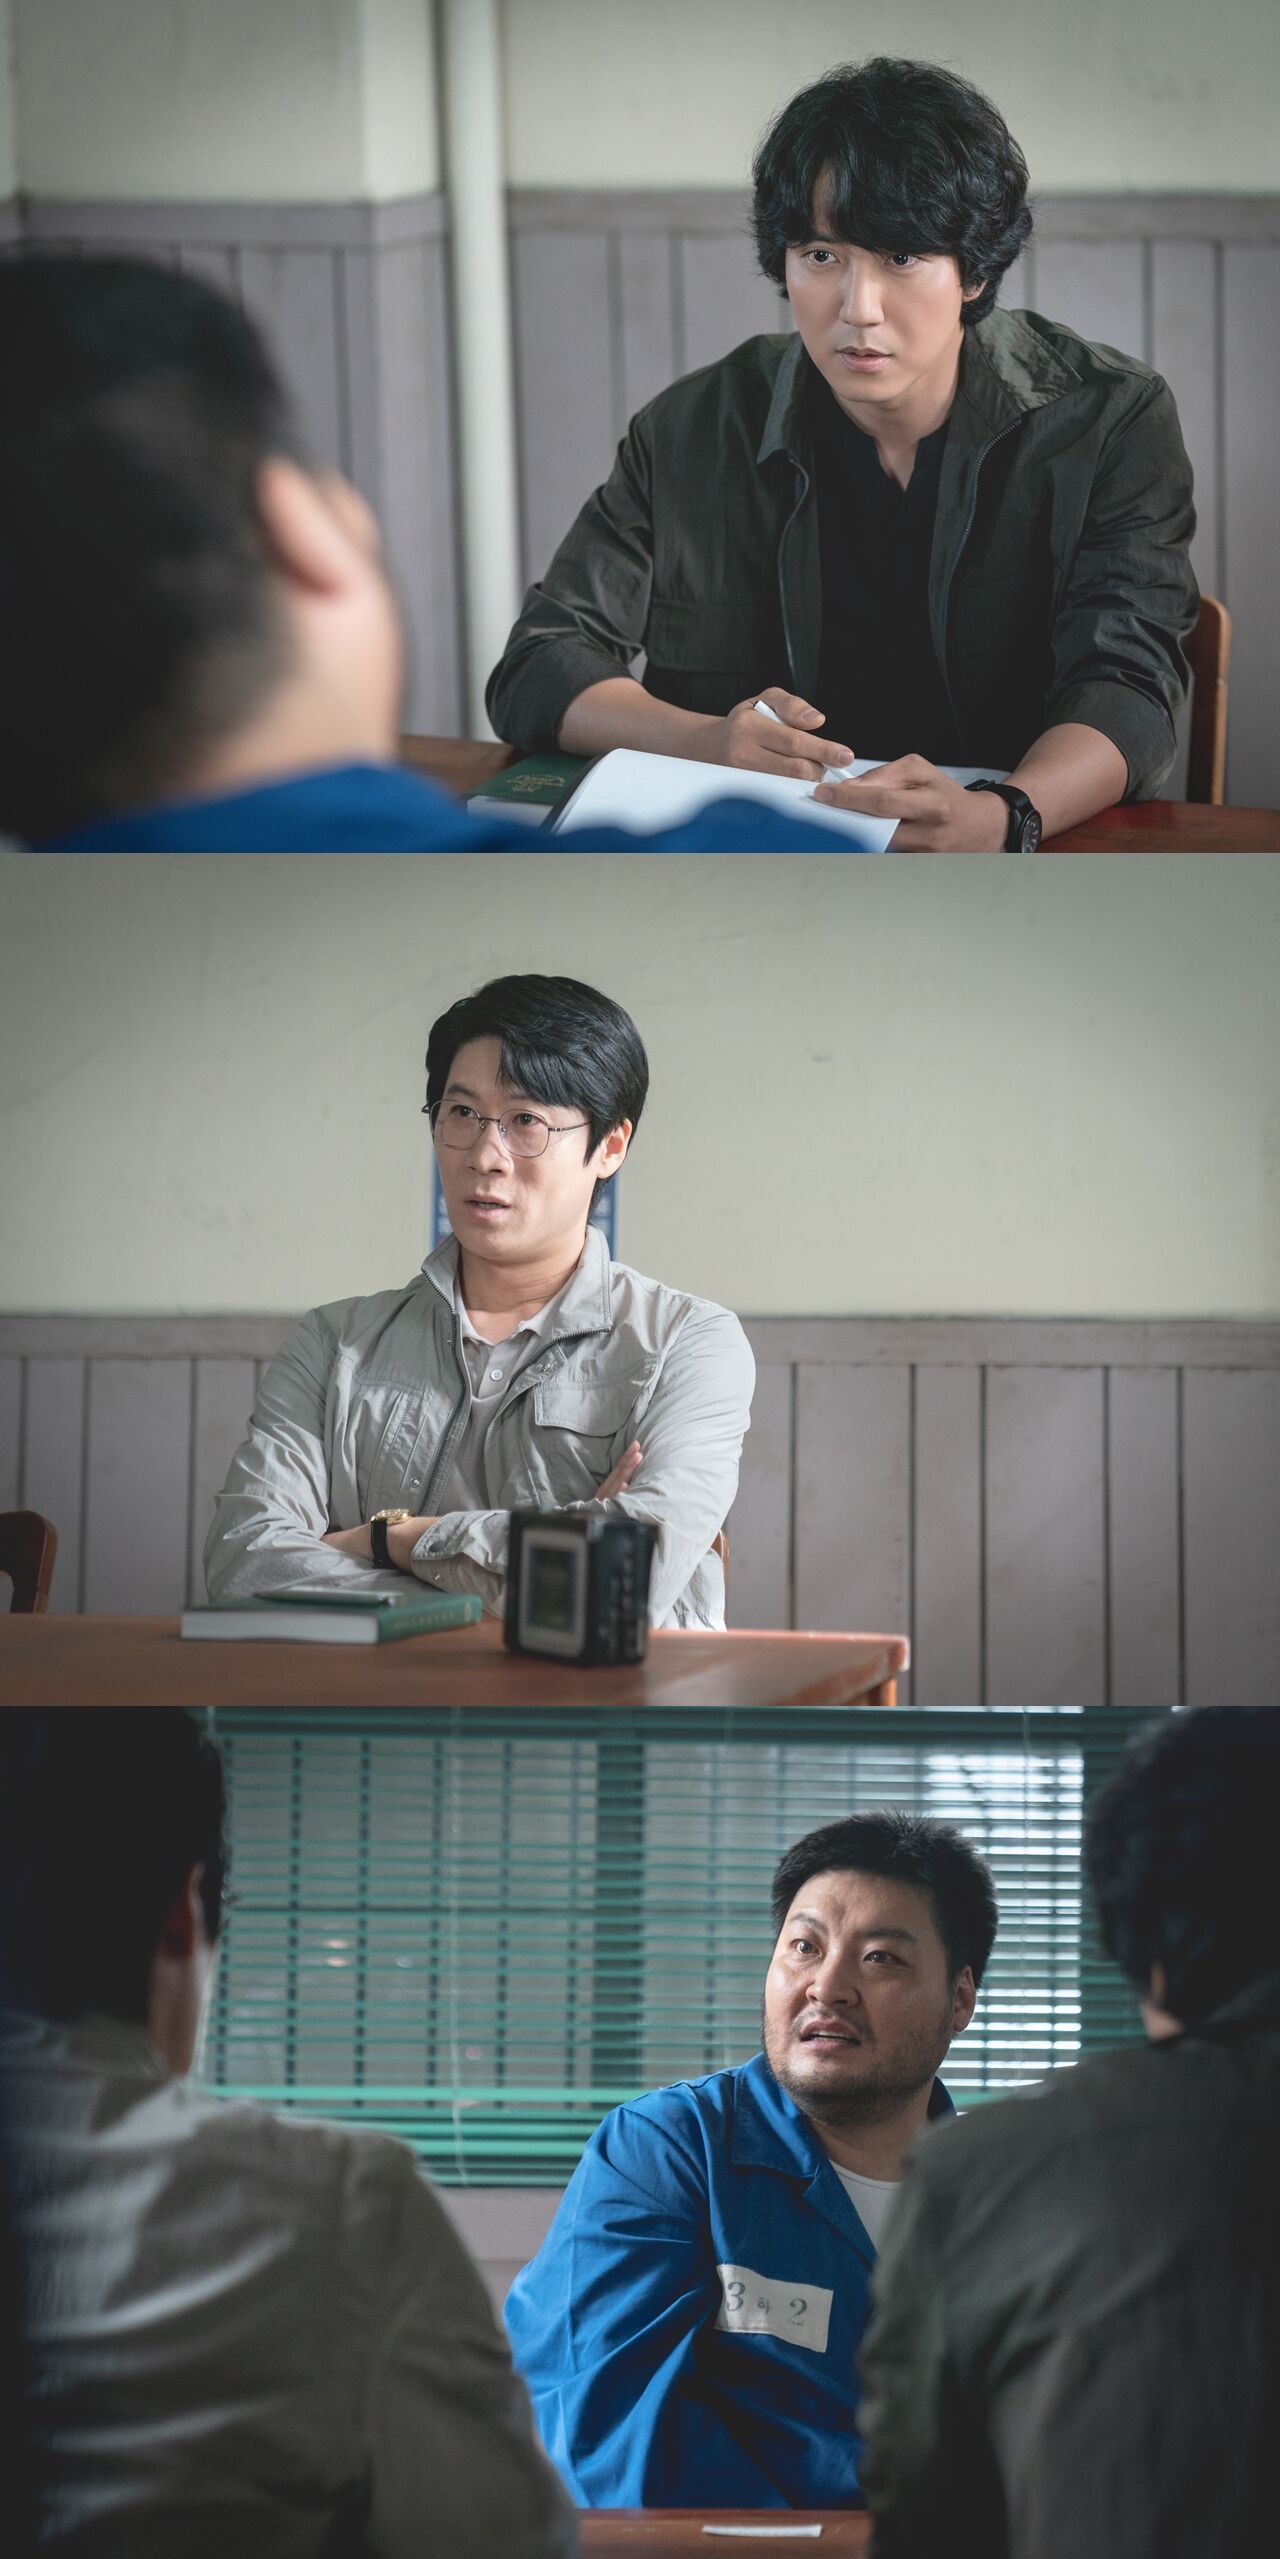 Bocoran Through The Darkness Episode 3, Kim Nam Gil dan Jin Sun Kyu Bekerja Sama Menyelidiki Penjahat, Tayang Malam Ini di SBS